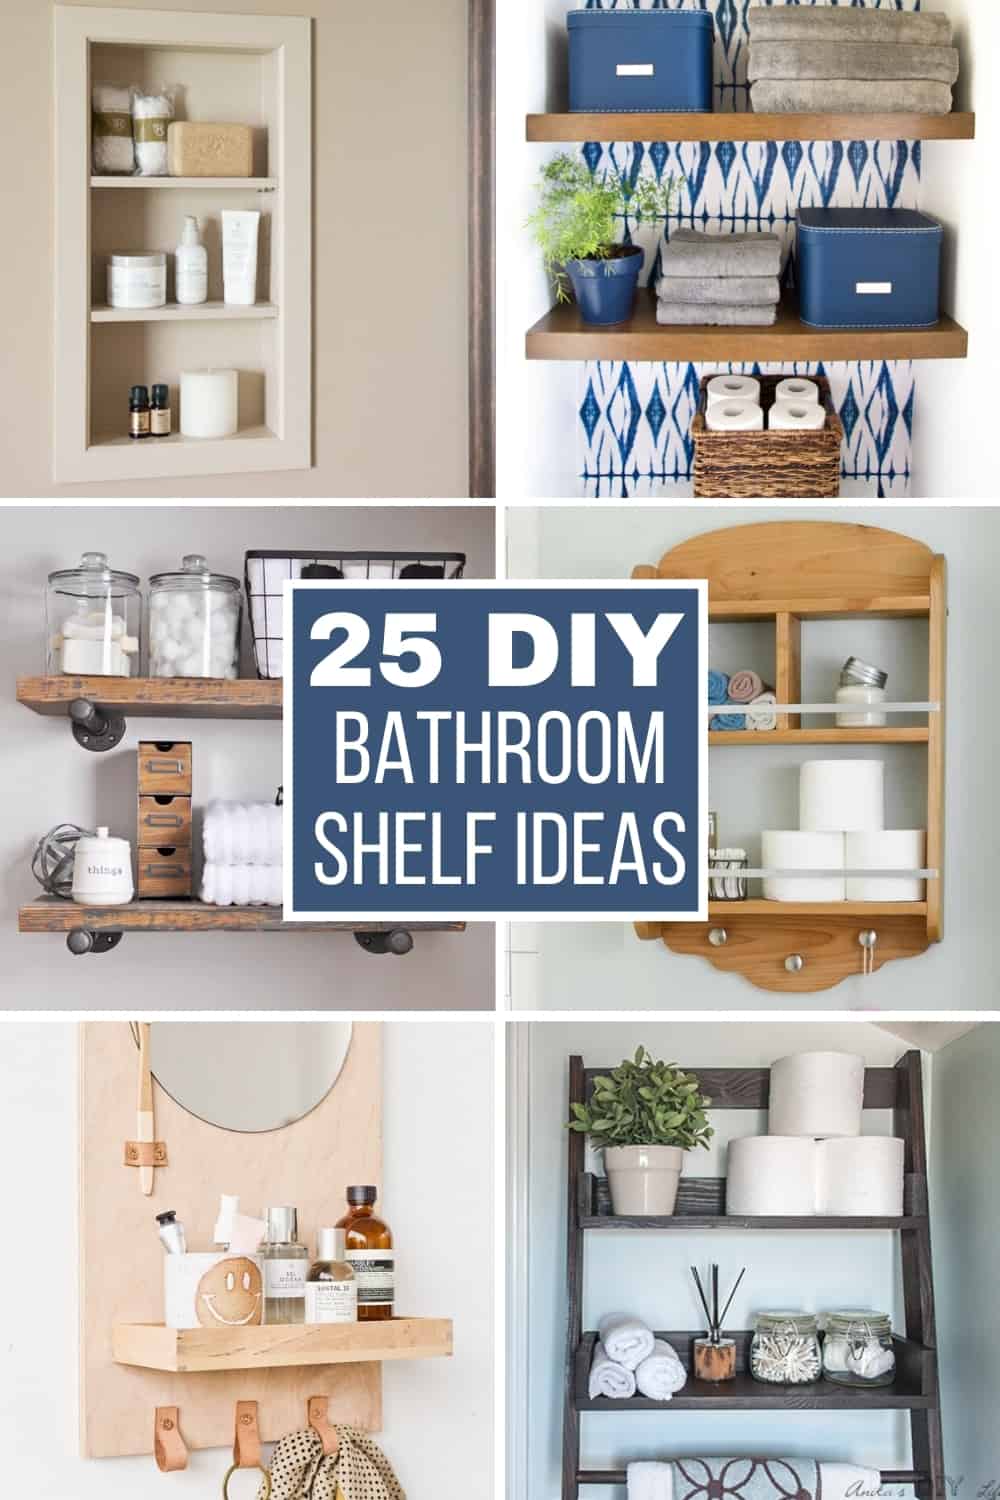 DIY bathroom shelf ideas collage